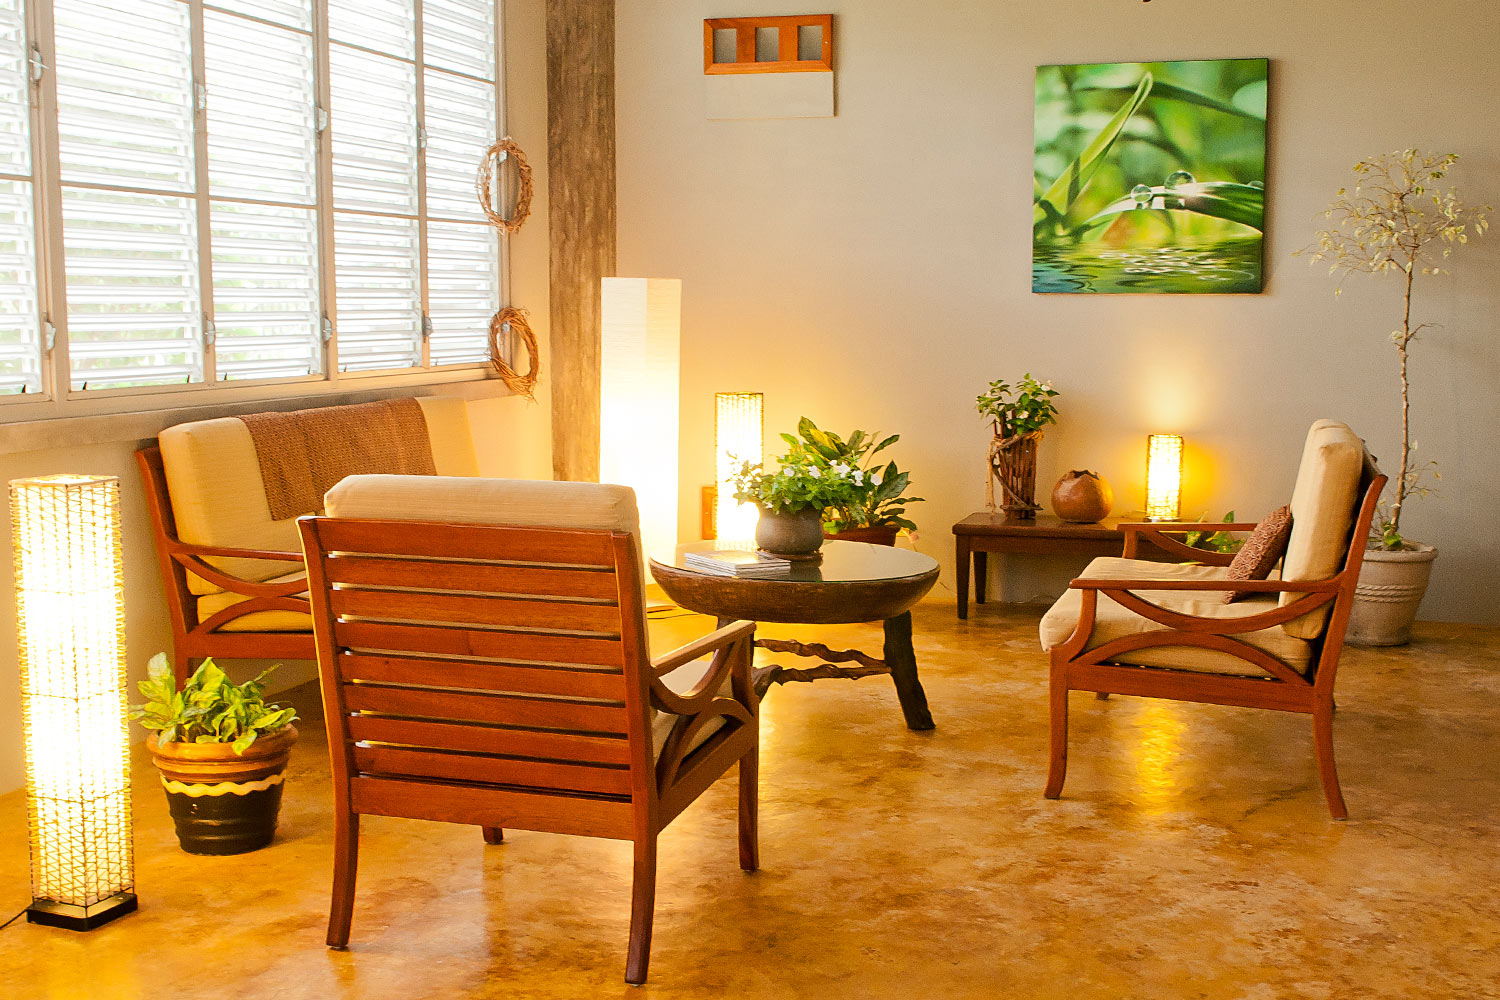 Living room furniture in Belize